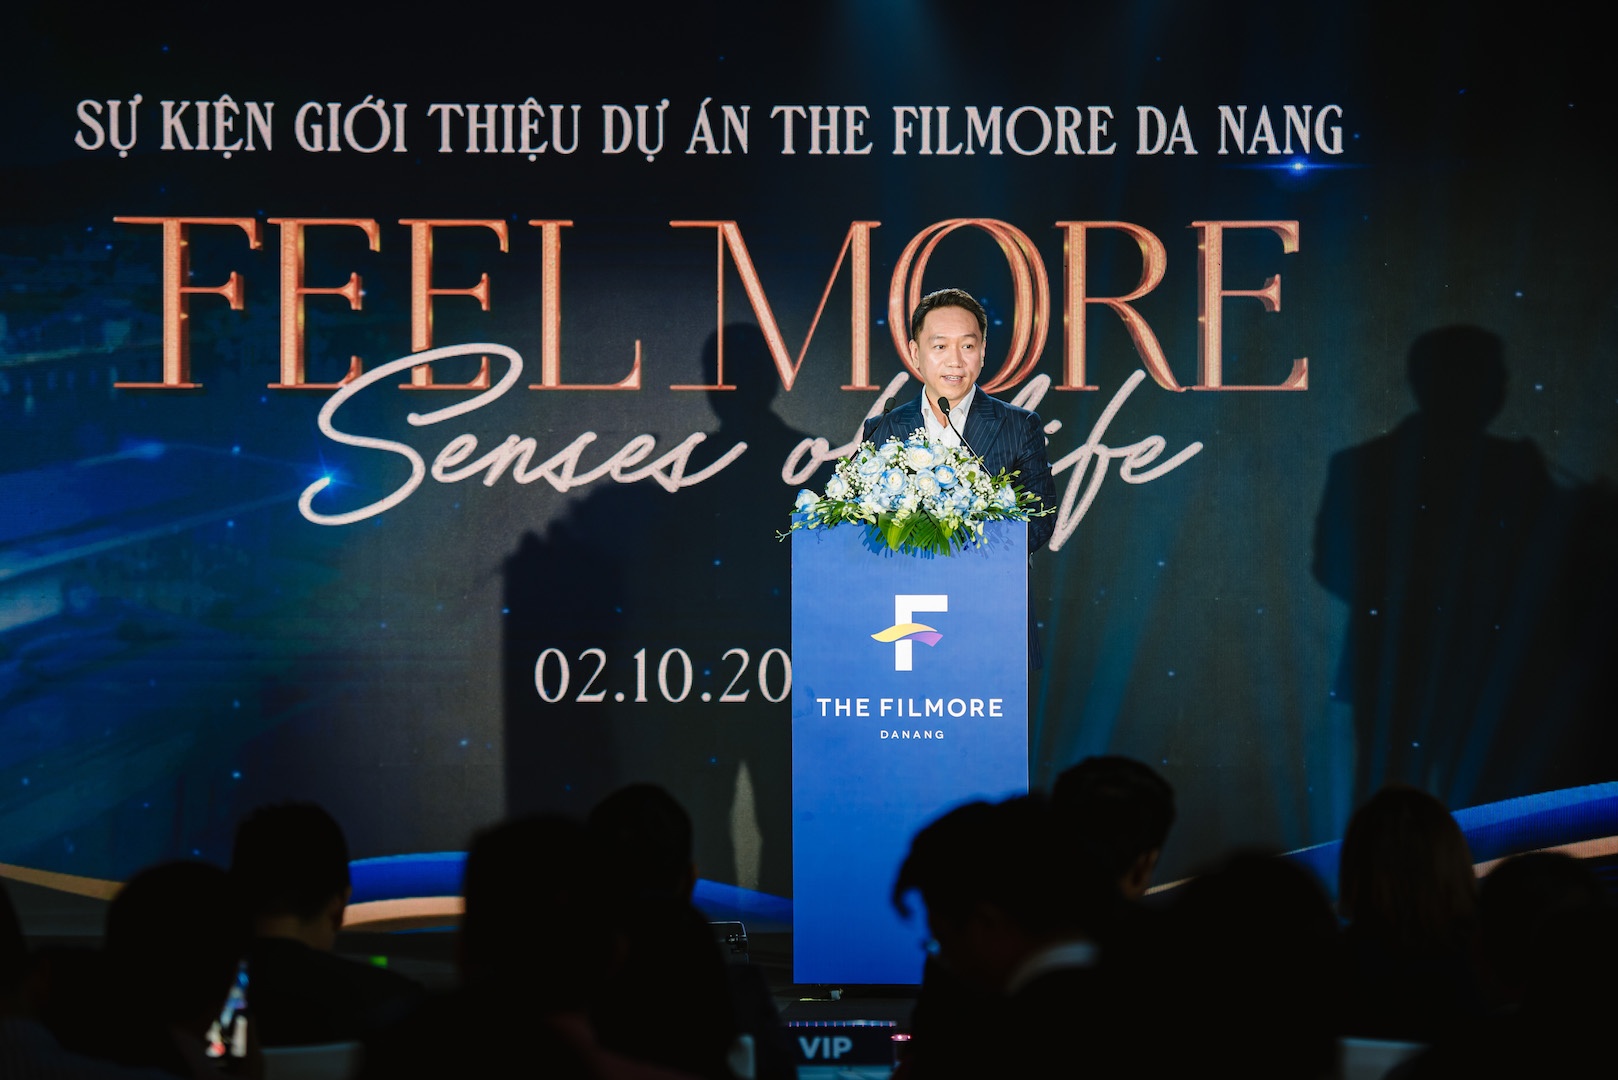 The Filmore Da Nang tạo sóng mạnh trên thị trường bất động sản miền Trung